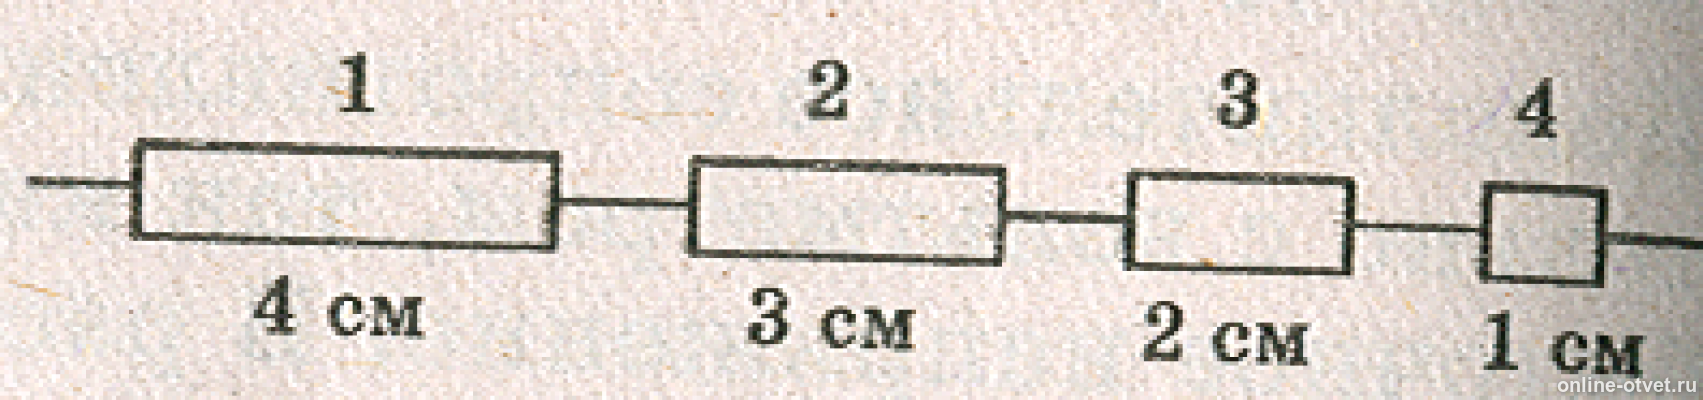 Цепочка состоит из четырех. Три проводки одинаковой длины и поперечного сечения. Электрическая цепь из разных сечений проводов. Электрическая цепь состоит из одинаковых провод. Проводники разной длины.